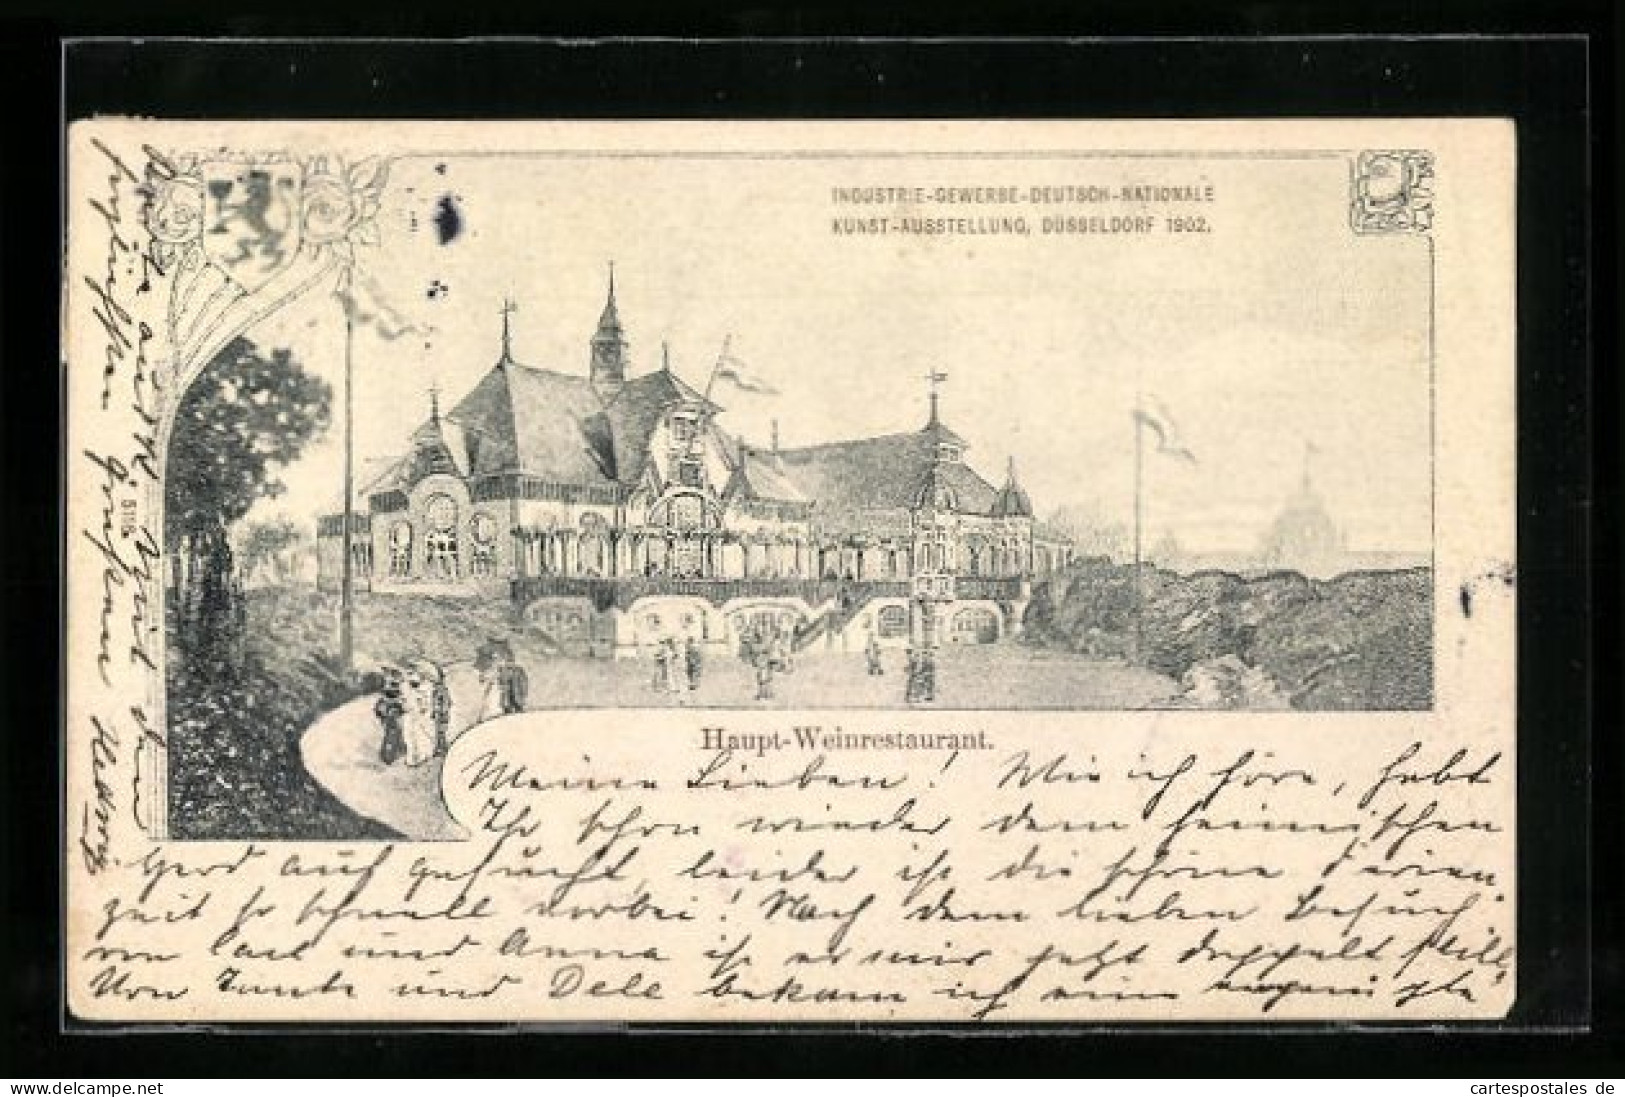 AK Düsseldorf, Industrie-, Gewerbe-, Deutsch- Nationale Kunstausstellung 1902, Haupt-Weinrestaurant  - Esposizioni